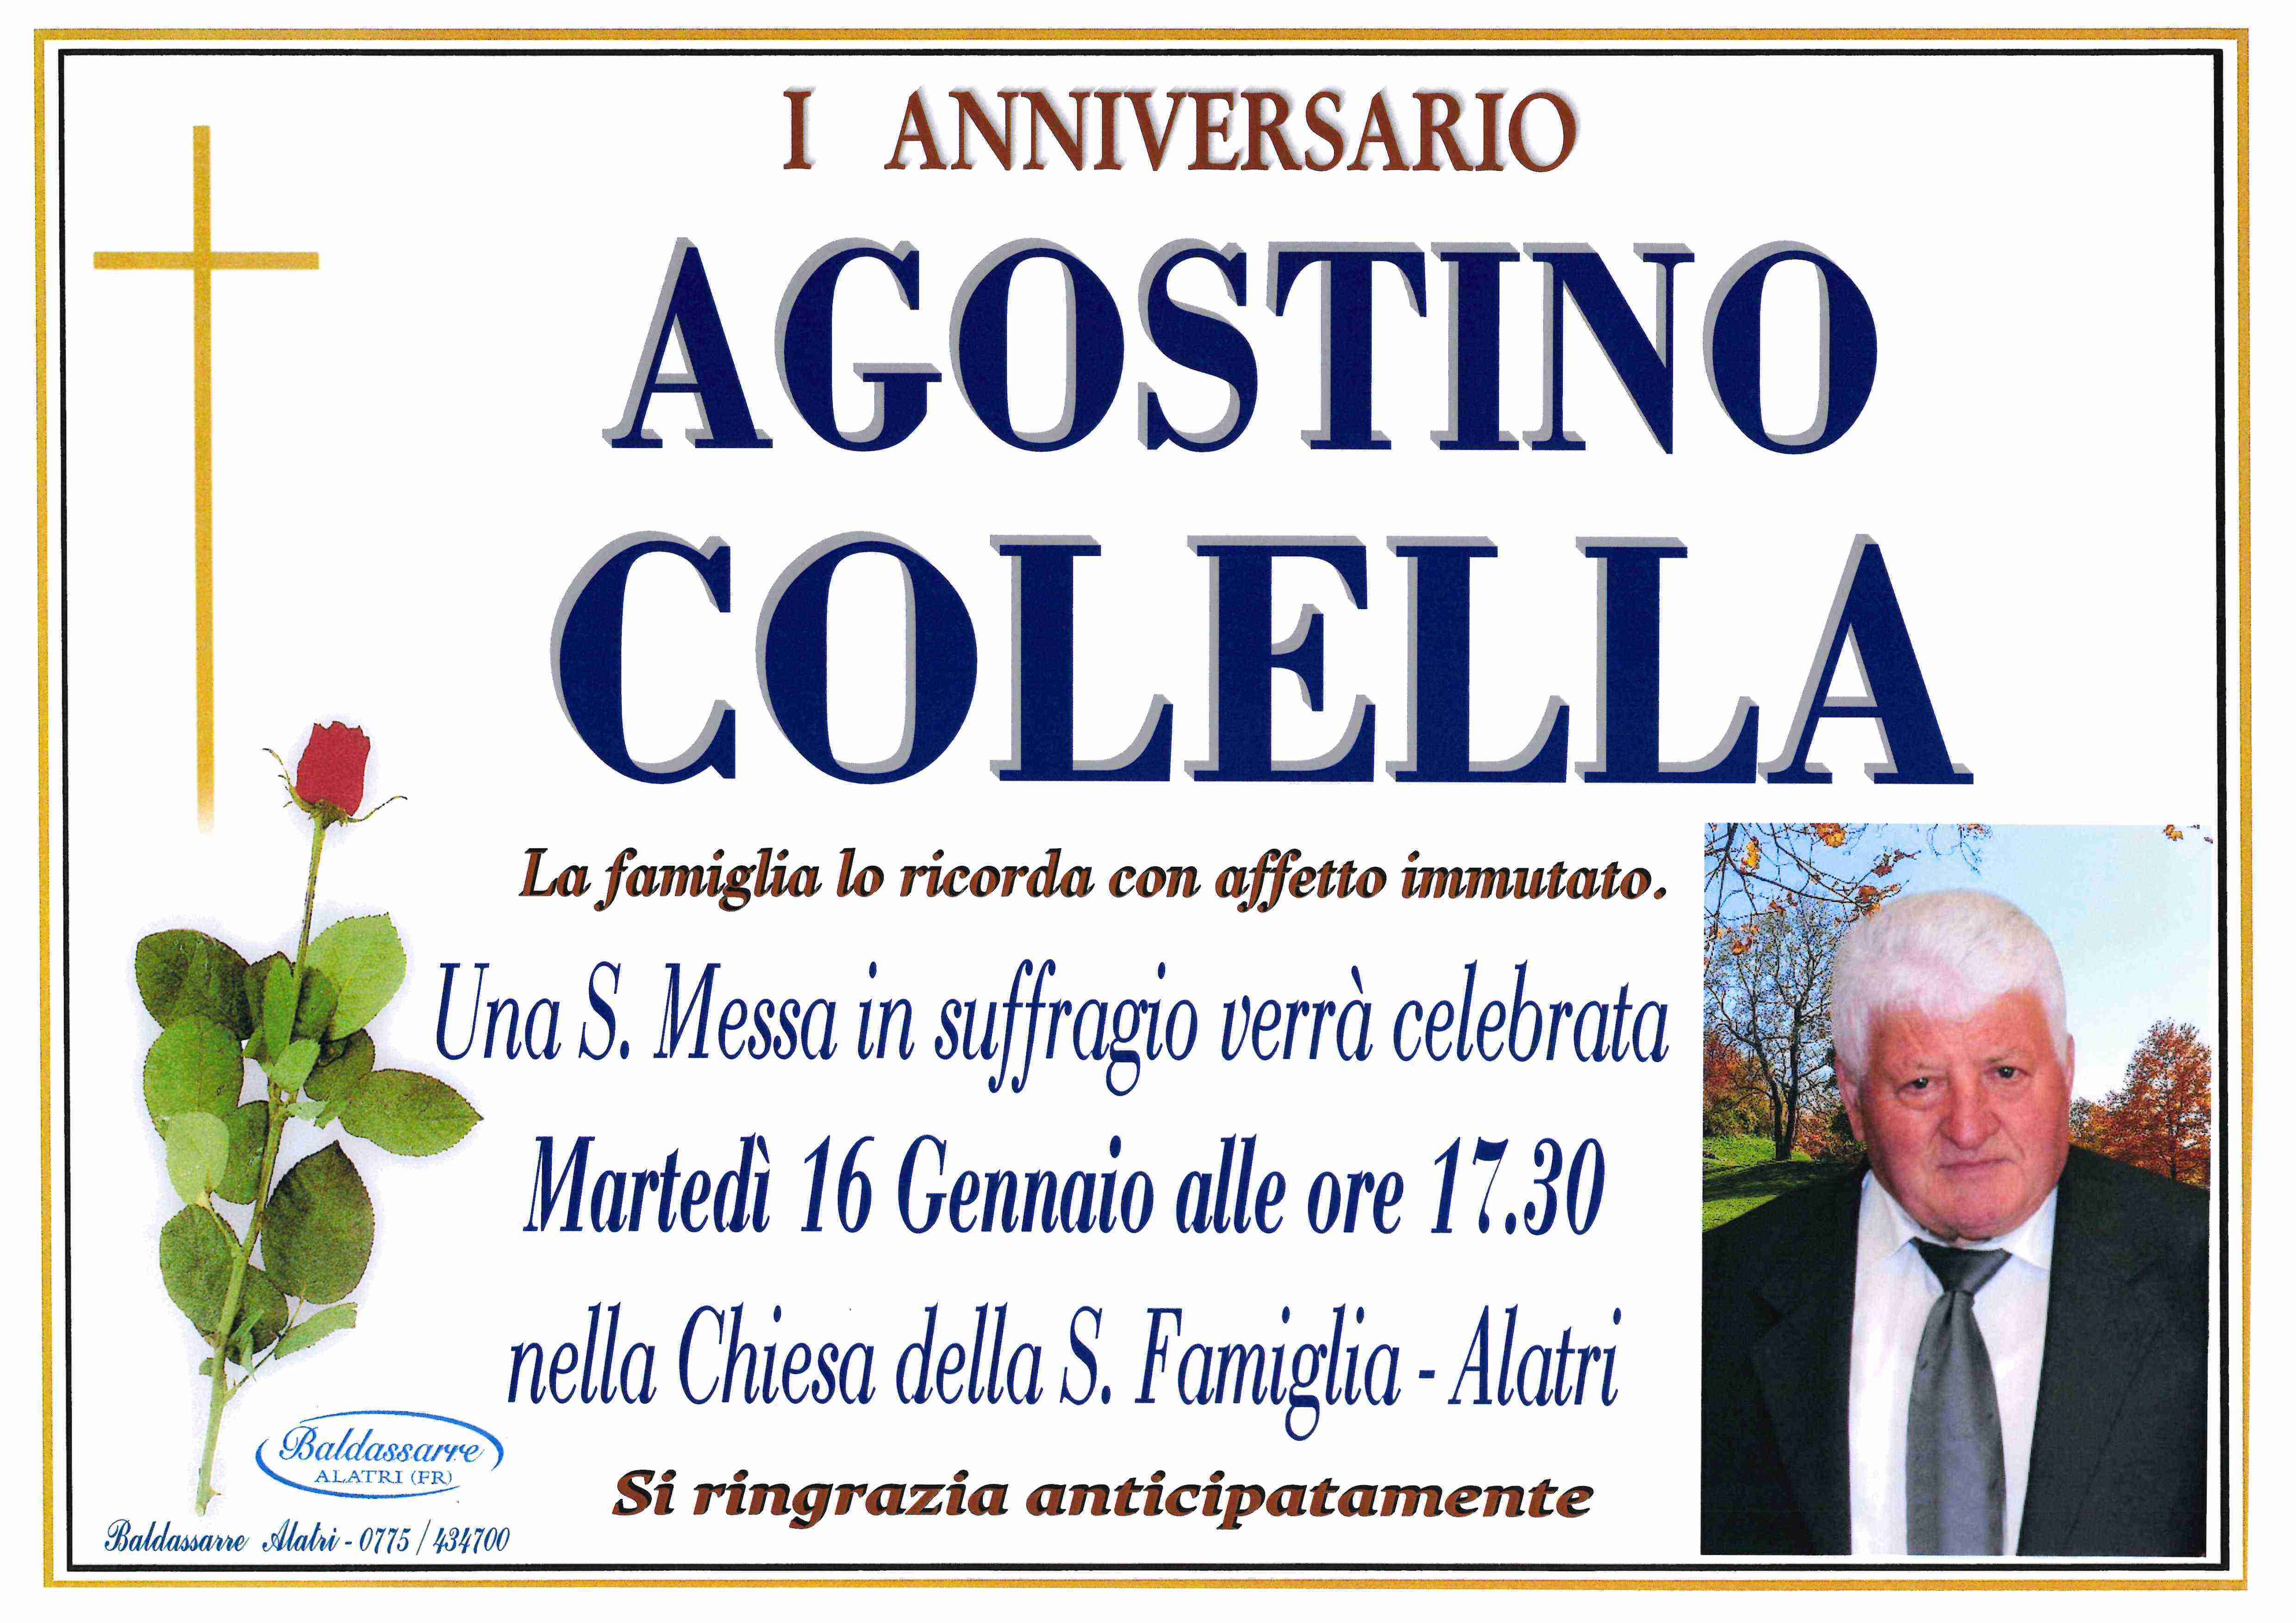 Agostino Colella